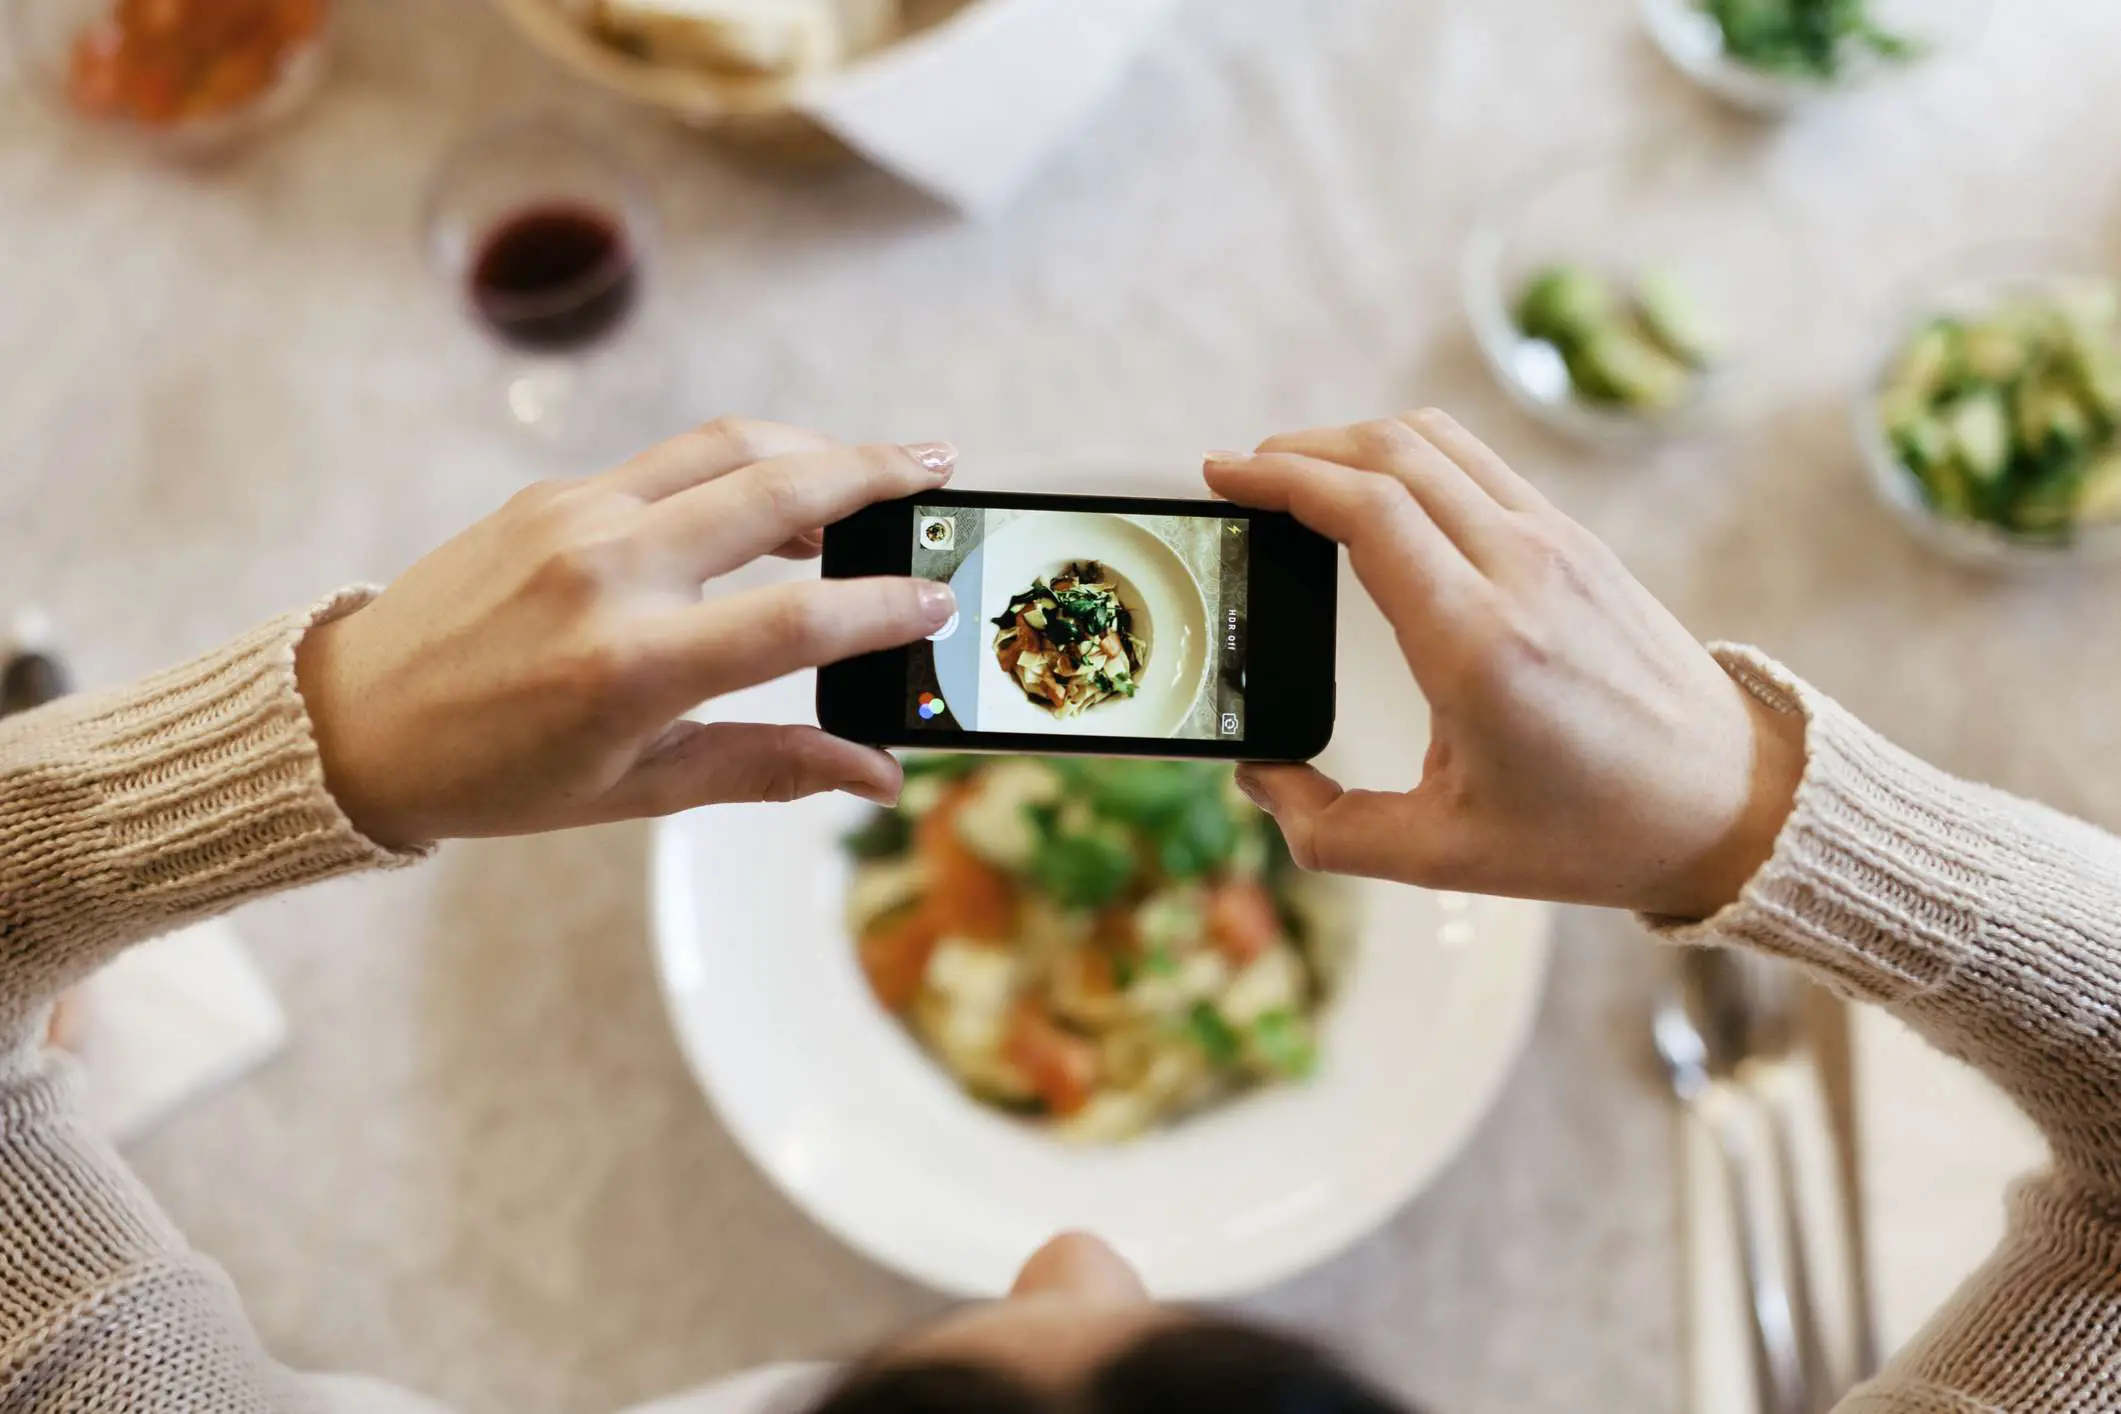 Uma imagem de alguém tirando uma foto de sua refeição com seu smartphone.